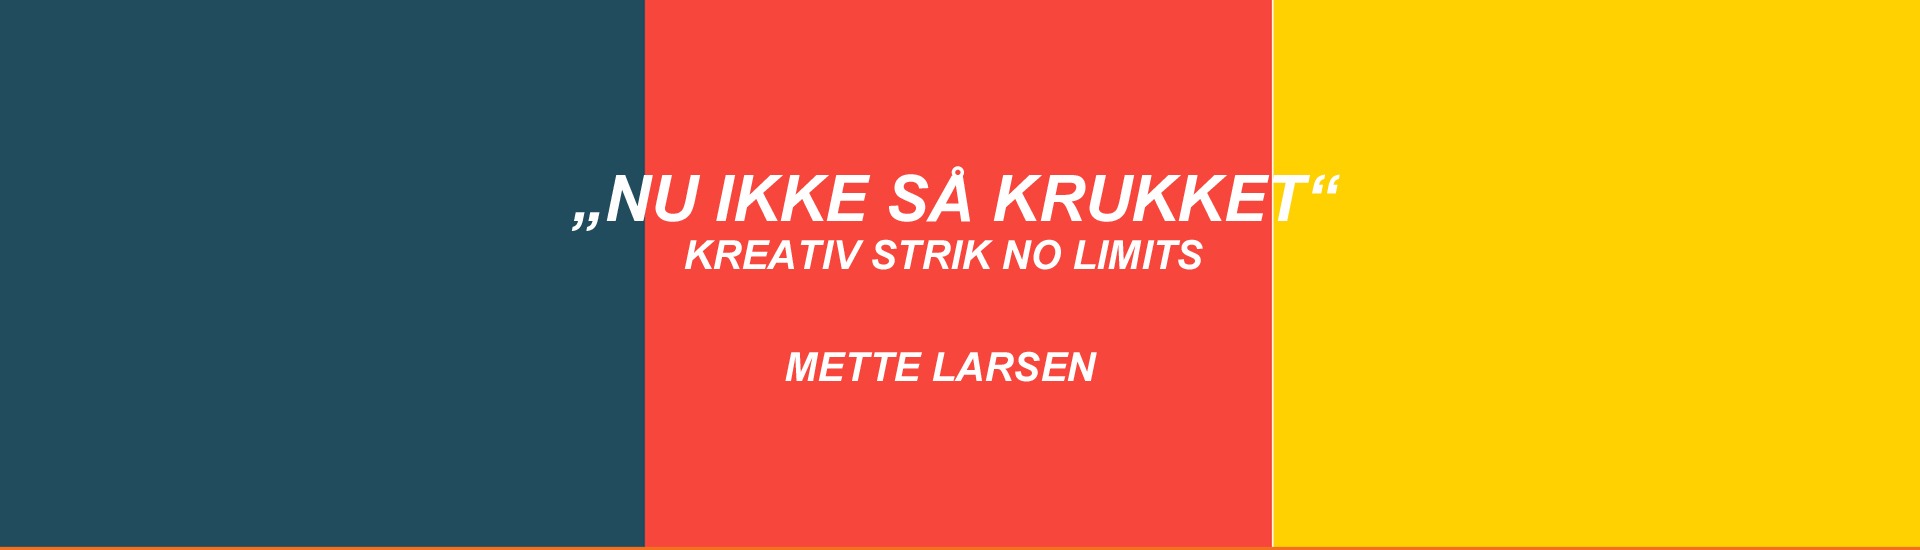 NU IKKE KRUKKET" strik - no limits -